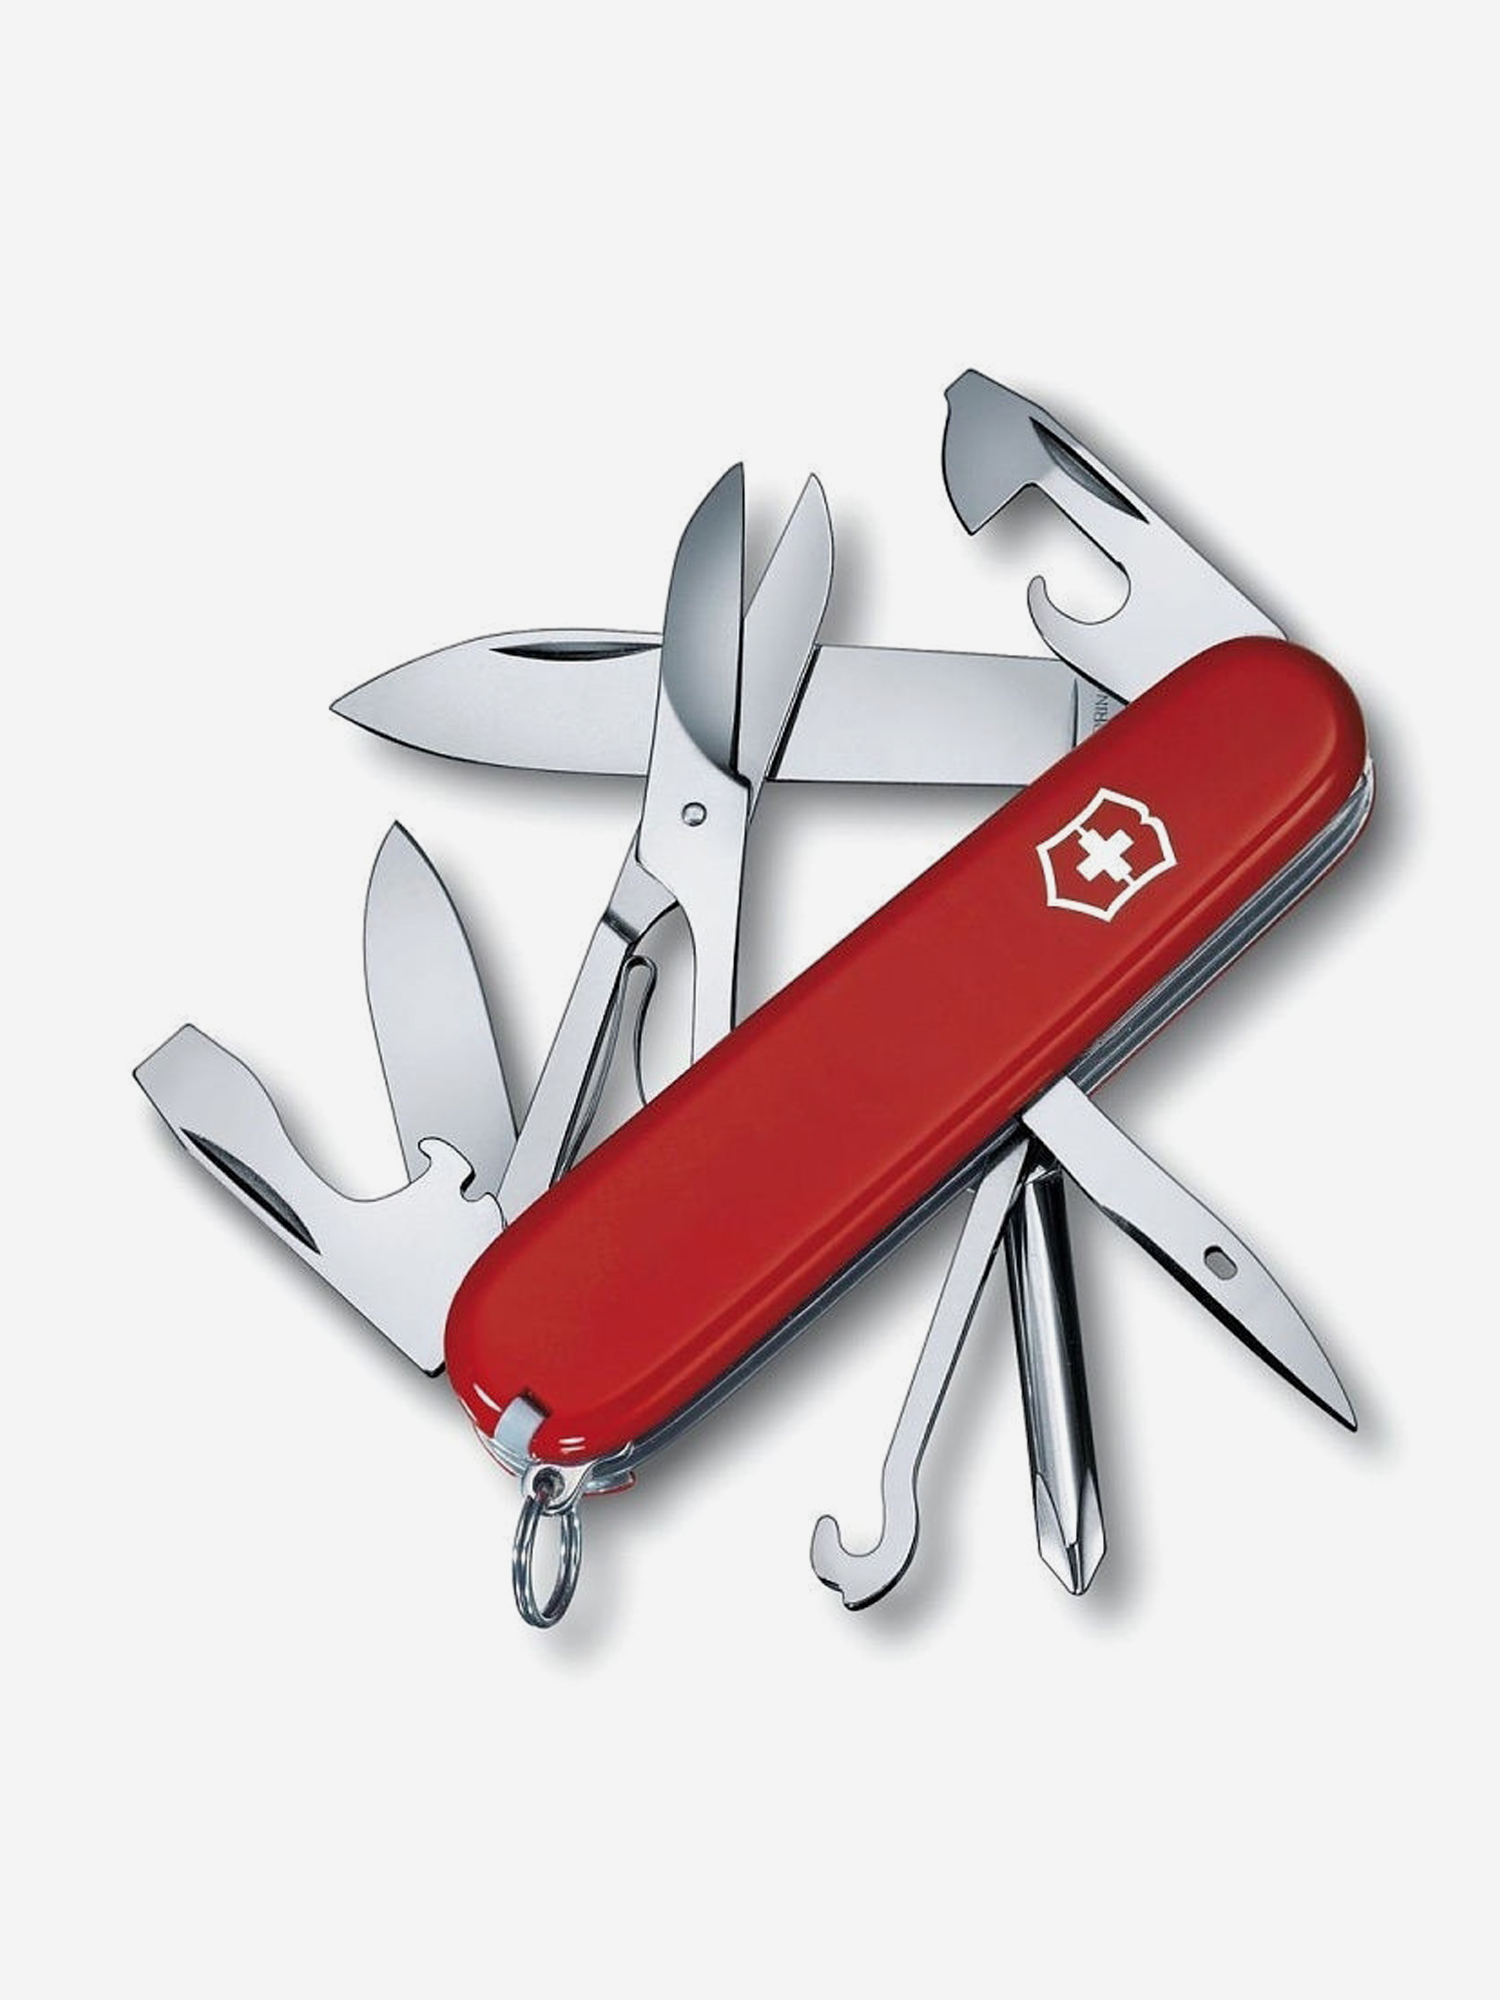 Нож складной Victorinox Super Tinker, 91 мм, 14 функций, Красный нож складной victorinox ranger 91 мм 21 функция красный